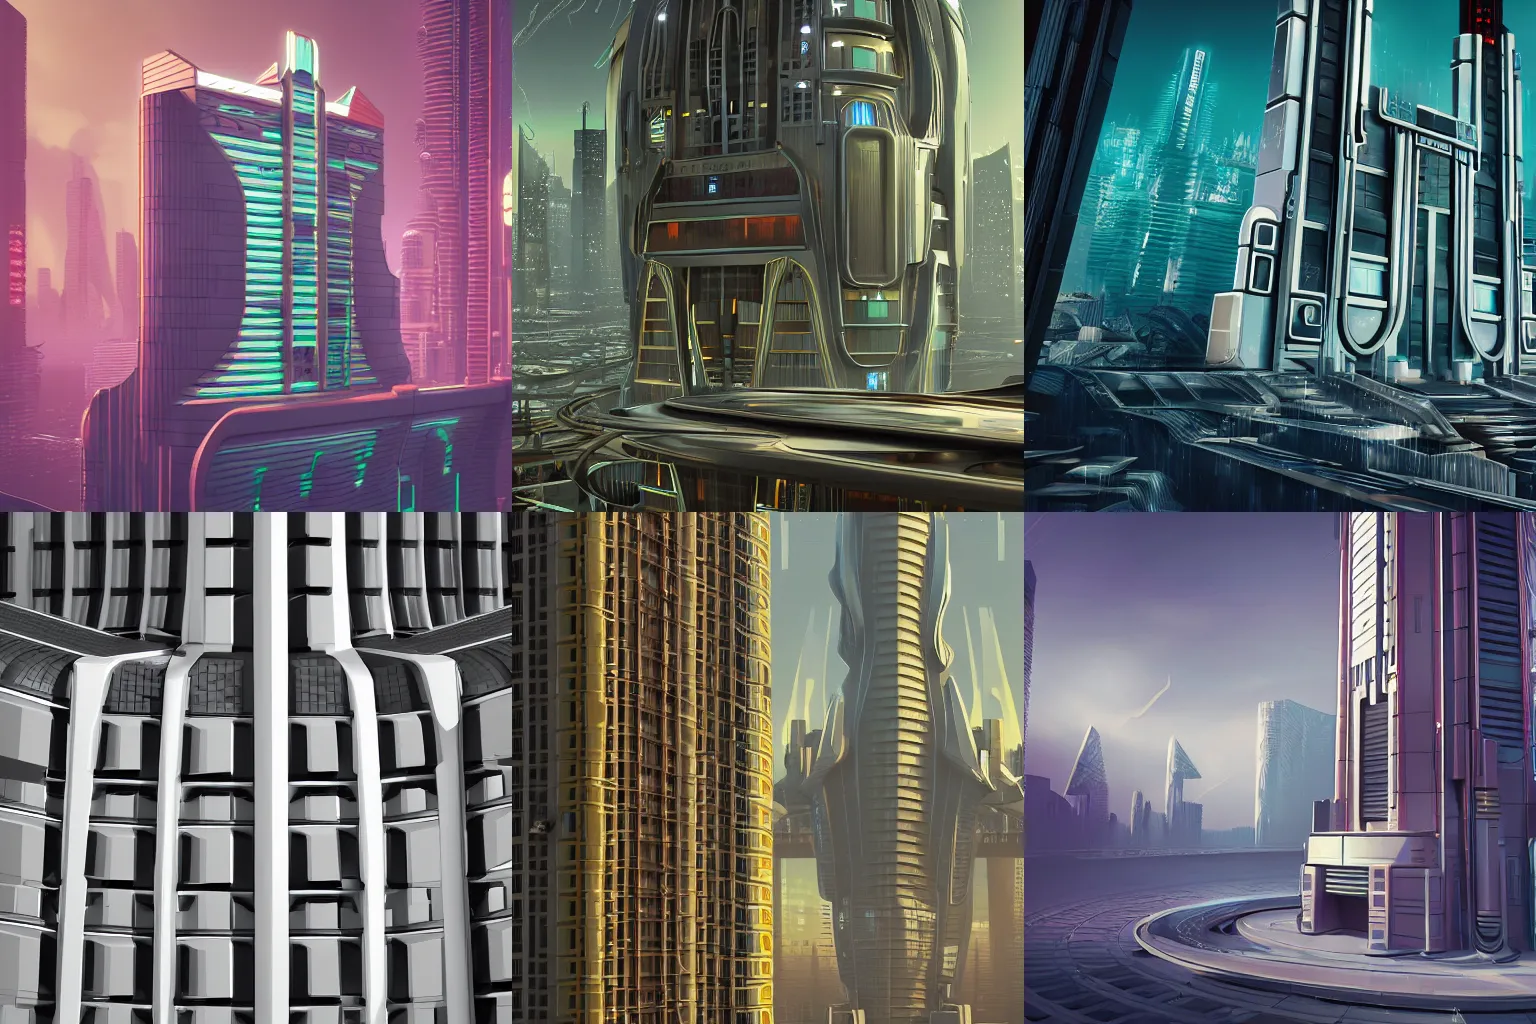 Prompt: futuristic art deco cyberpunk building, 4k, high detail